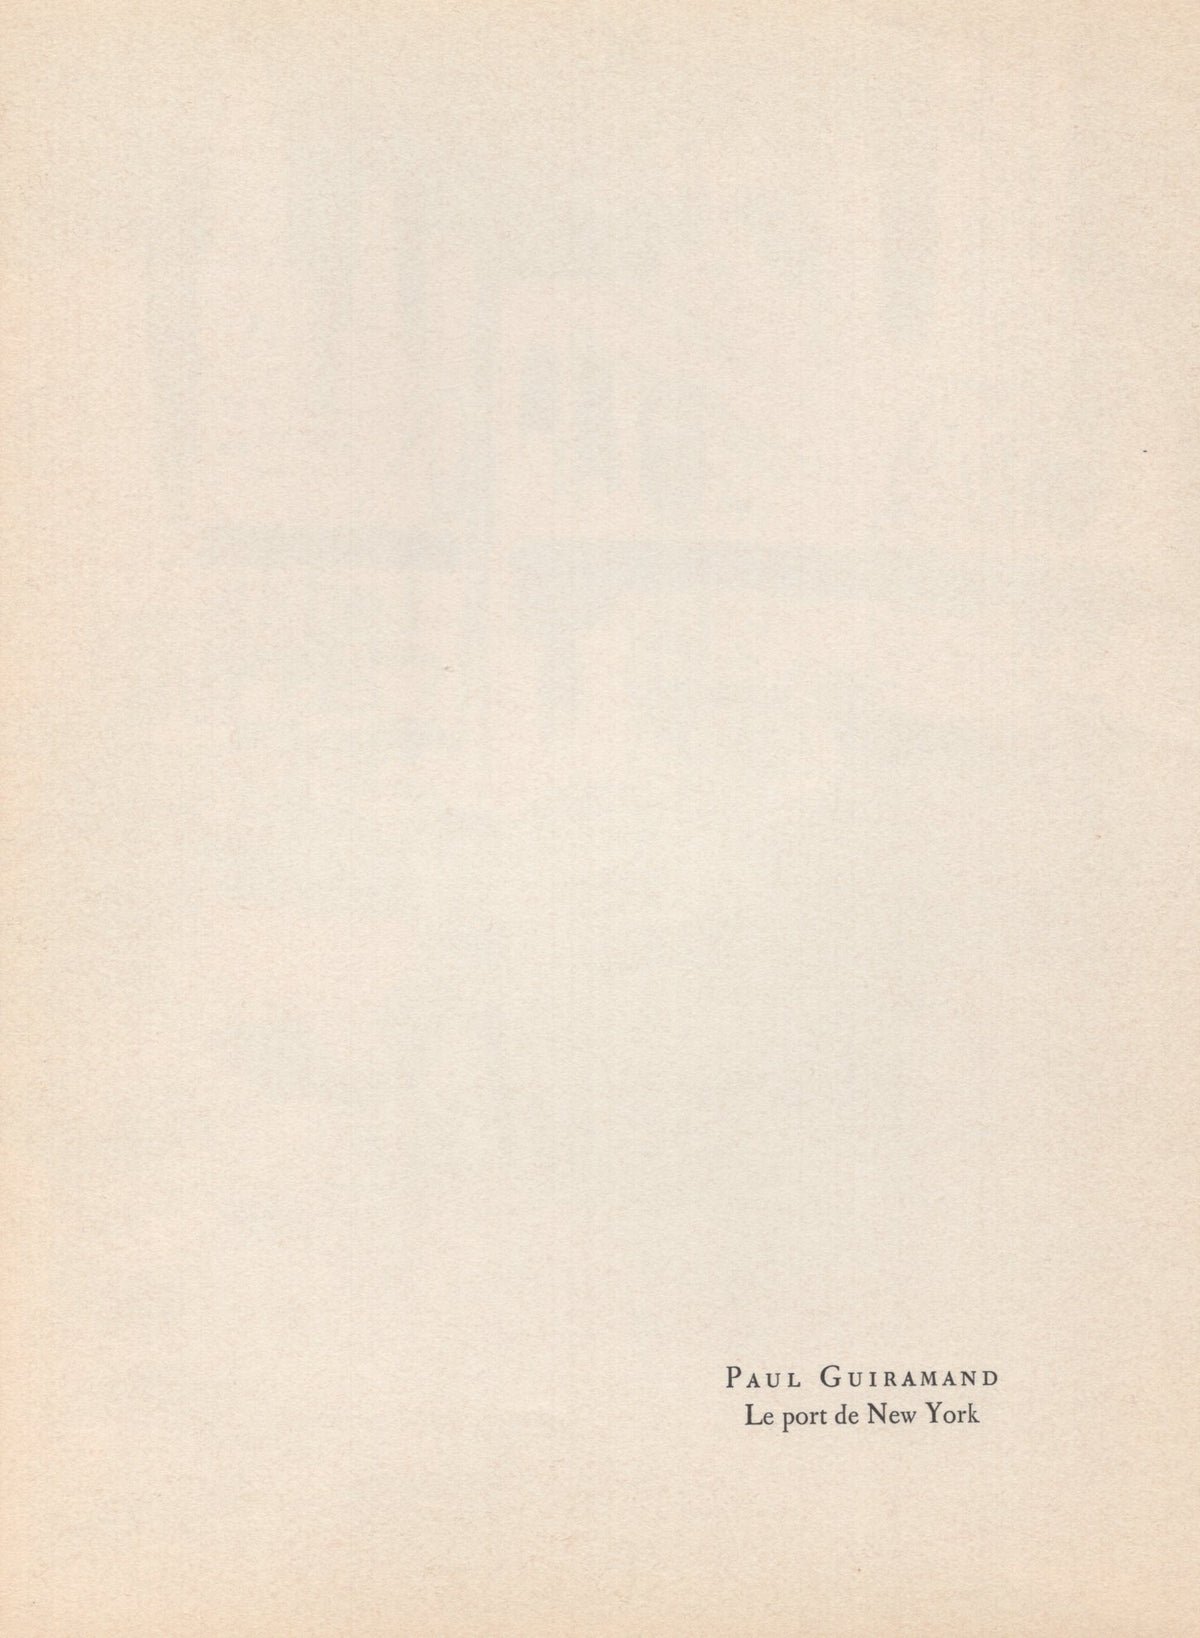 Paul Guiramand - &quot;Le port de New York&quot; - Mourlot Press 1964 Lithograph - 7.5 x 10&quot;